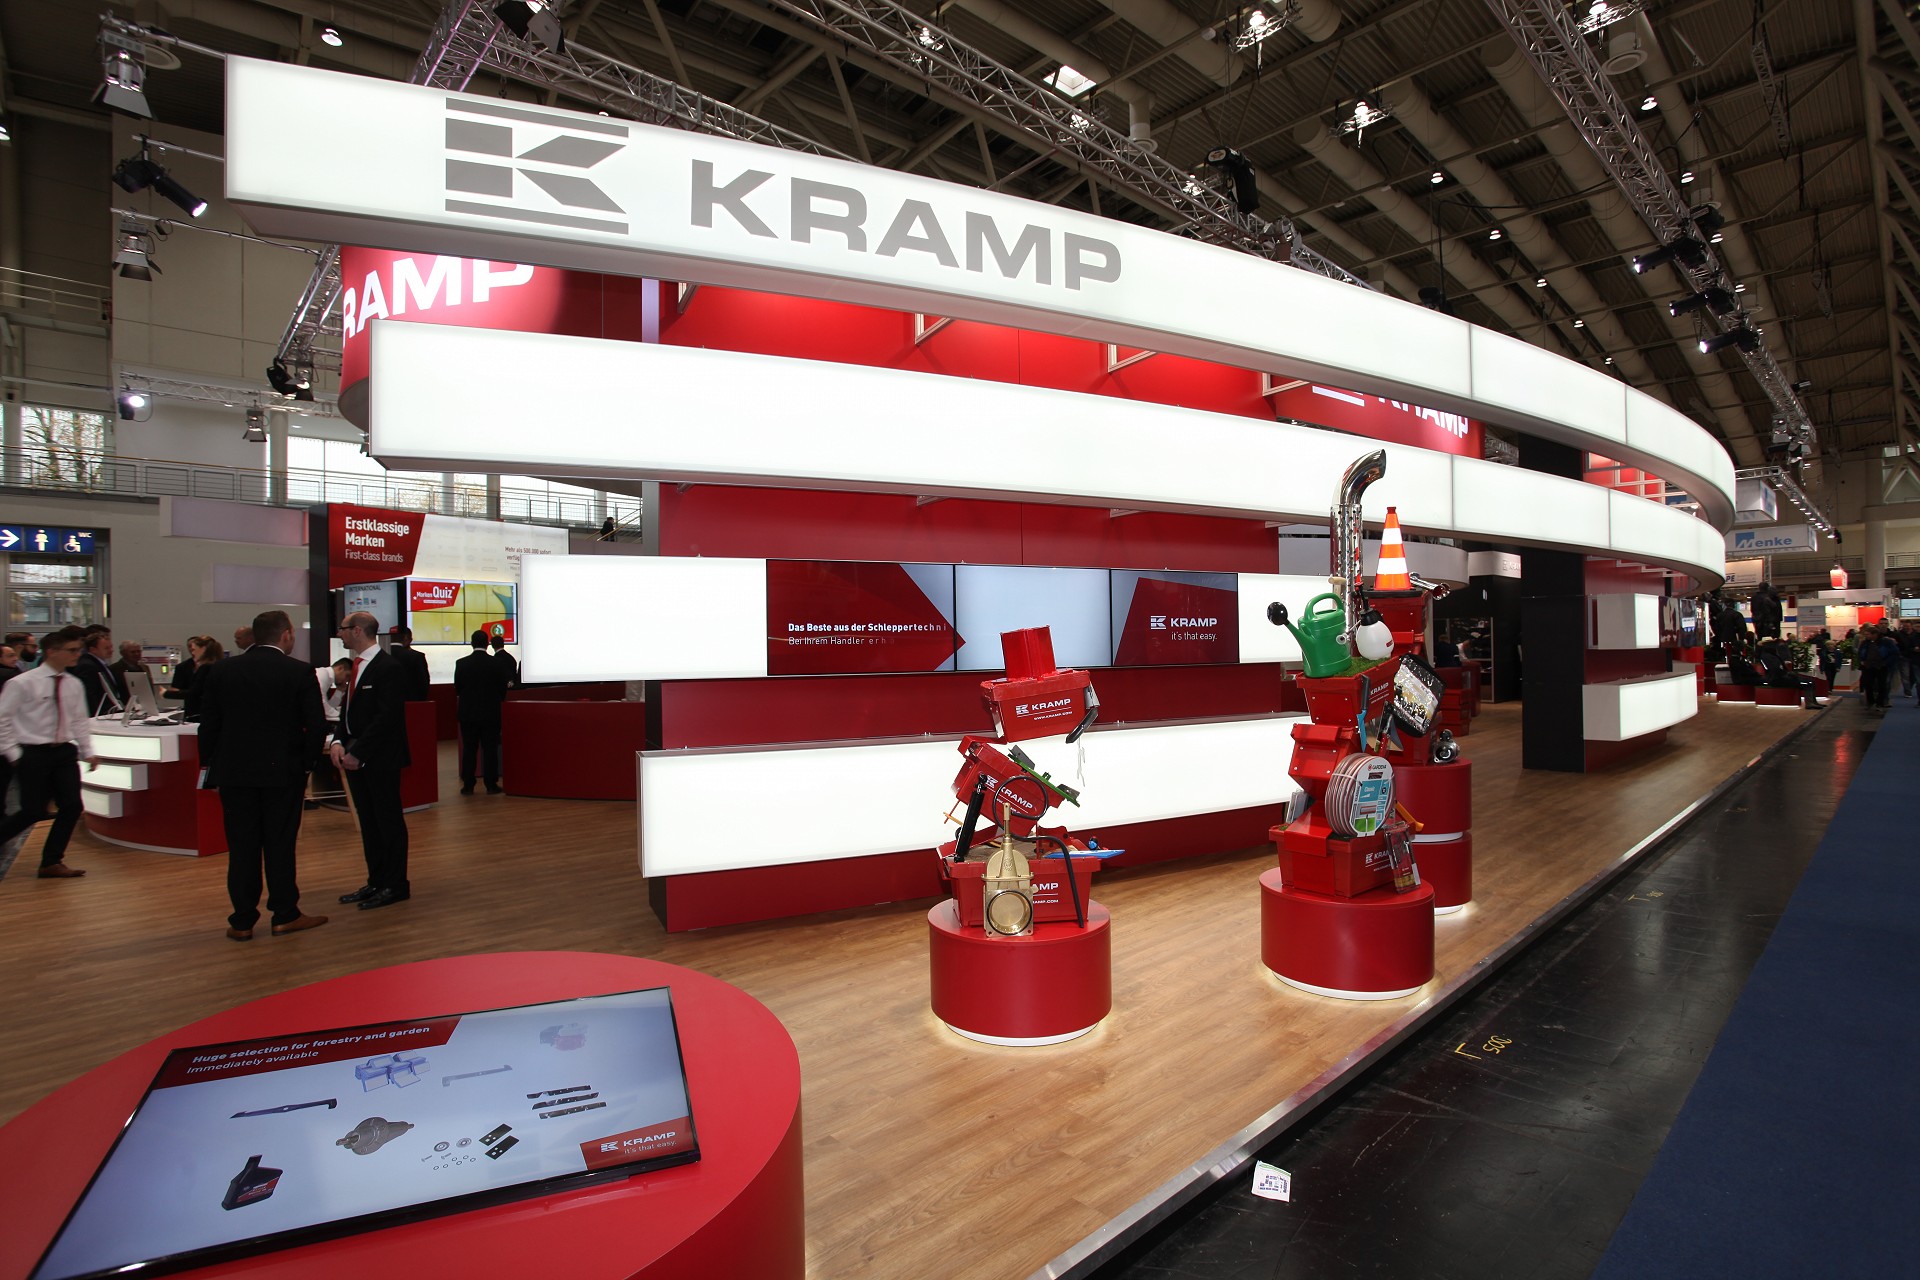 Kramp Exhibit booth